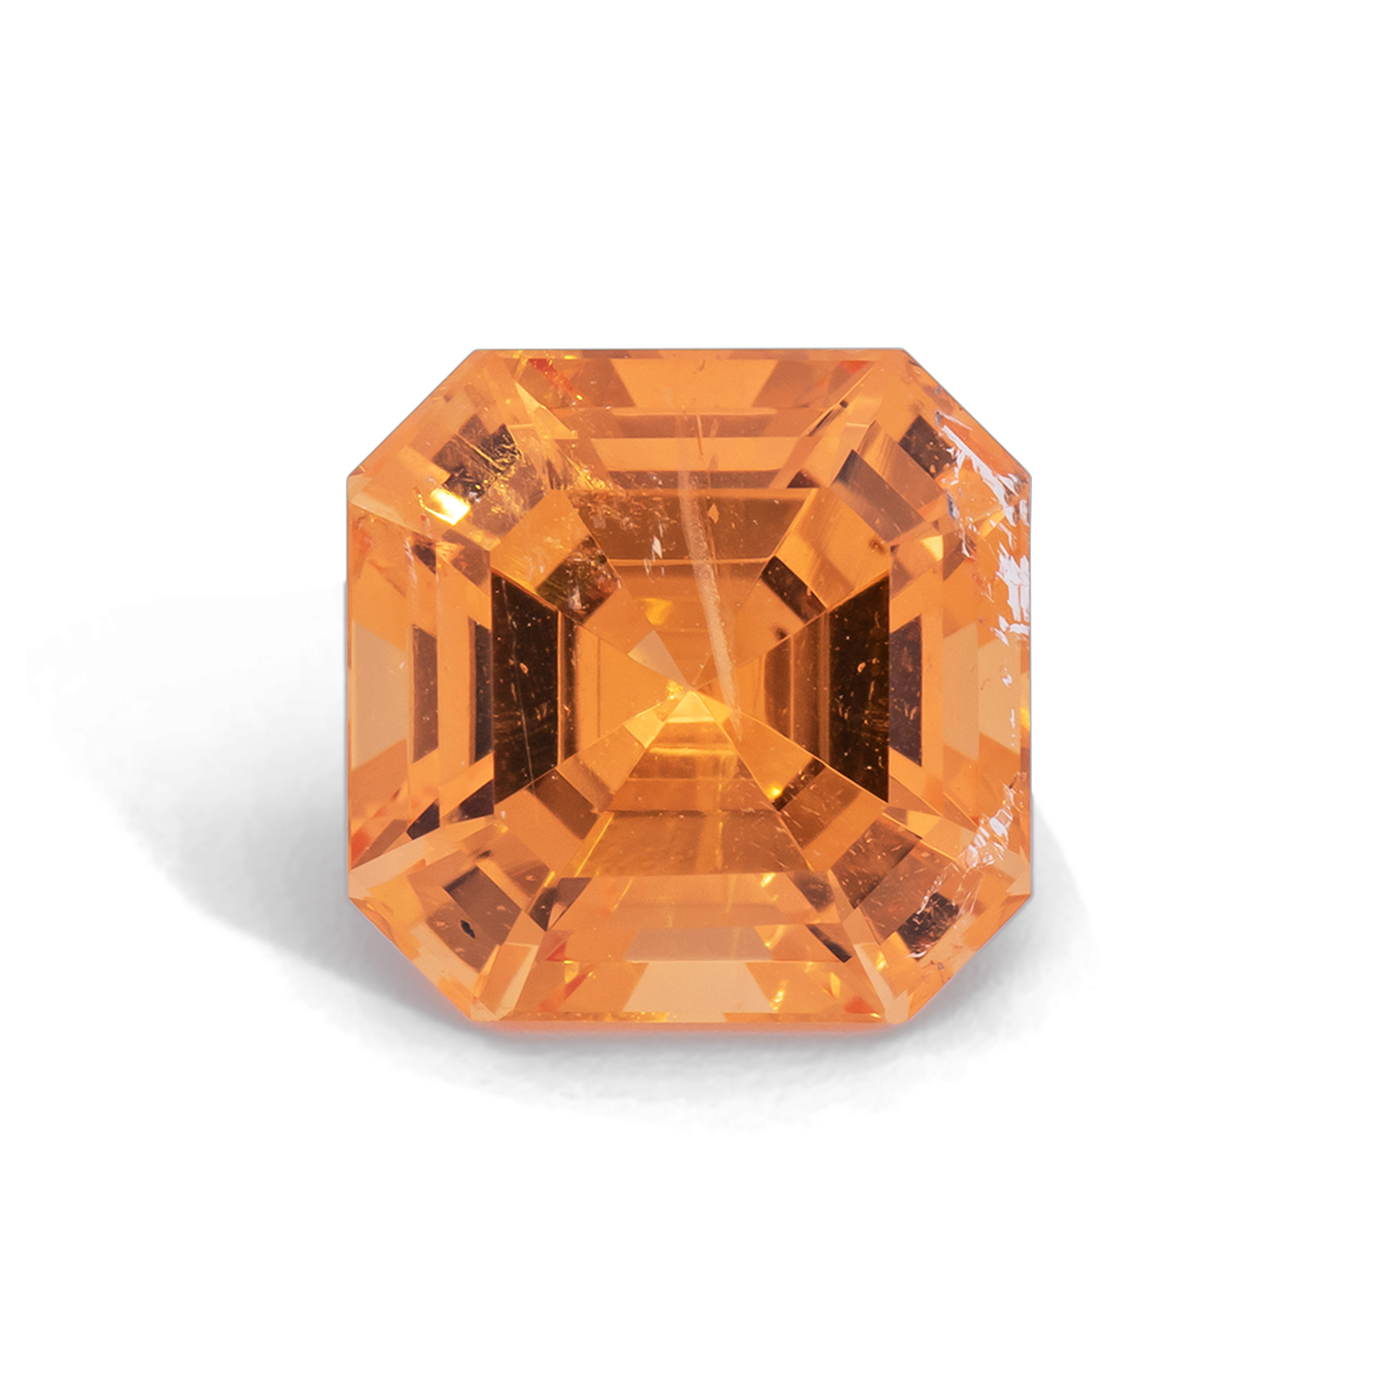 Mandarin Granat - orange, asscher, 7x7 mm, 2.03 cts, Nr. MG99009